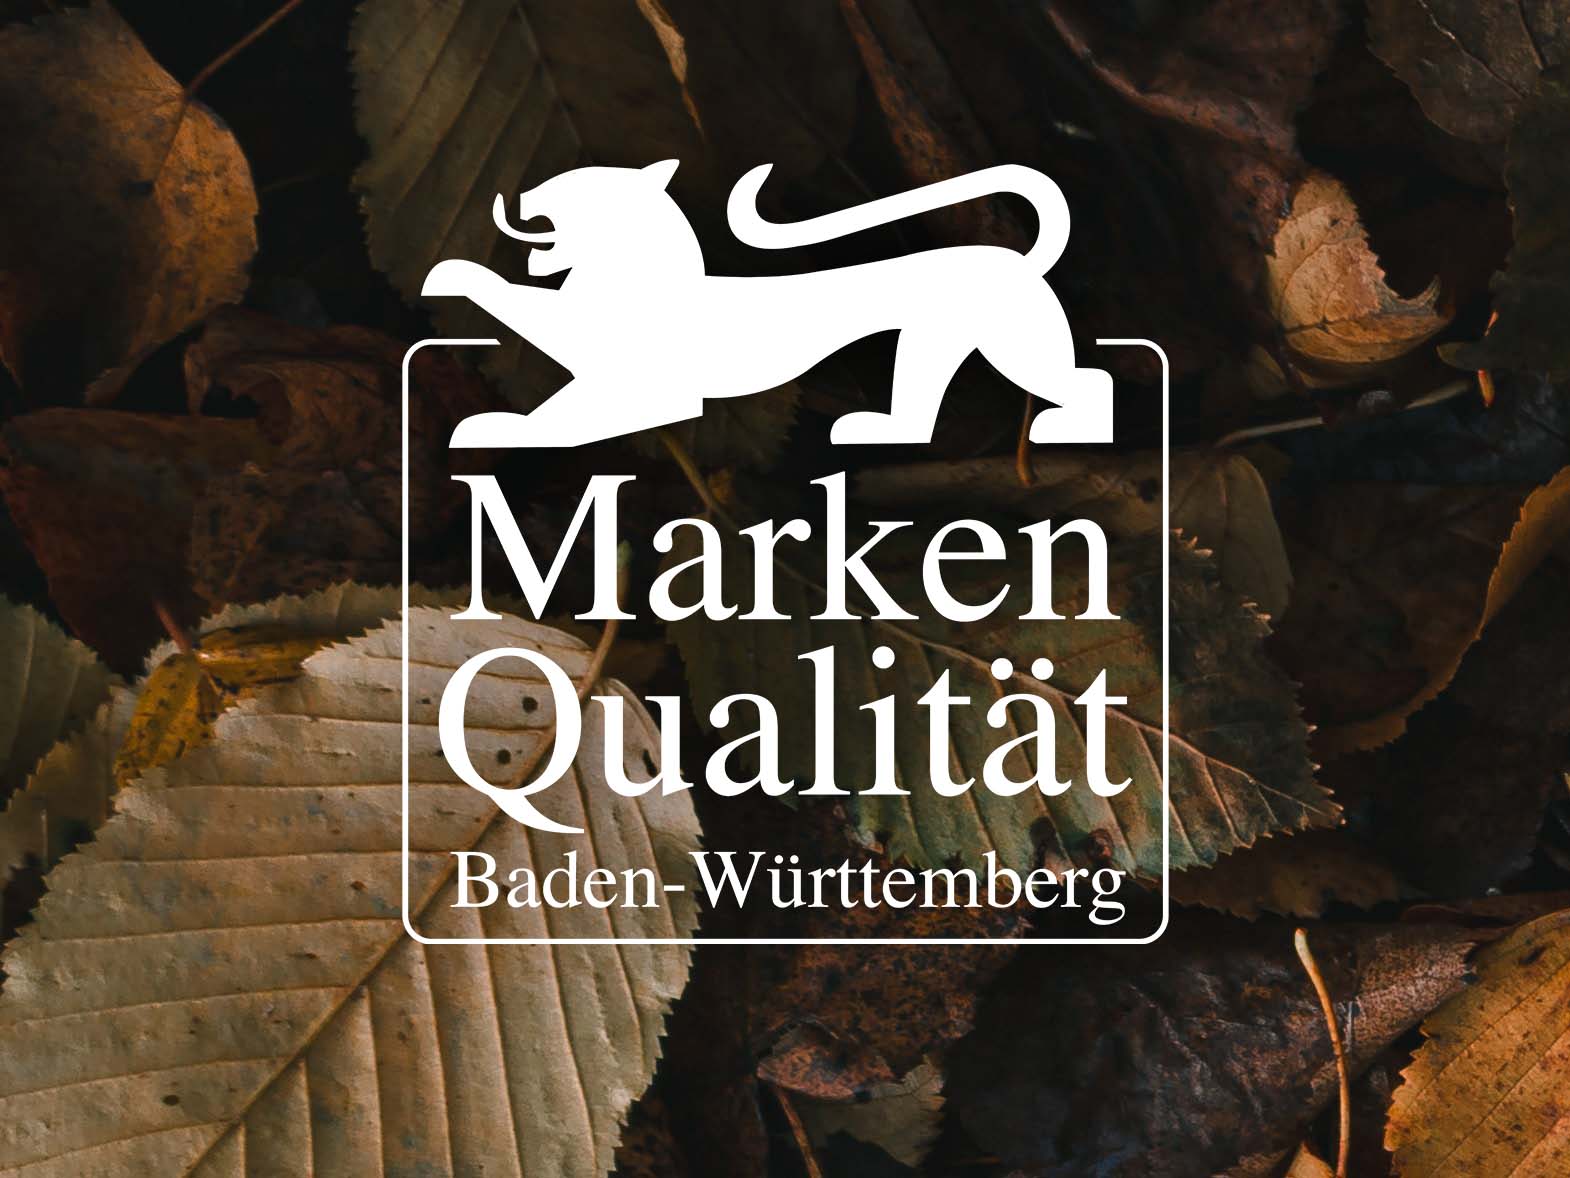 Logo für Markenqualität aus Baden-Württemberg mit losen Mayka-Brezeln im Hintergrund